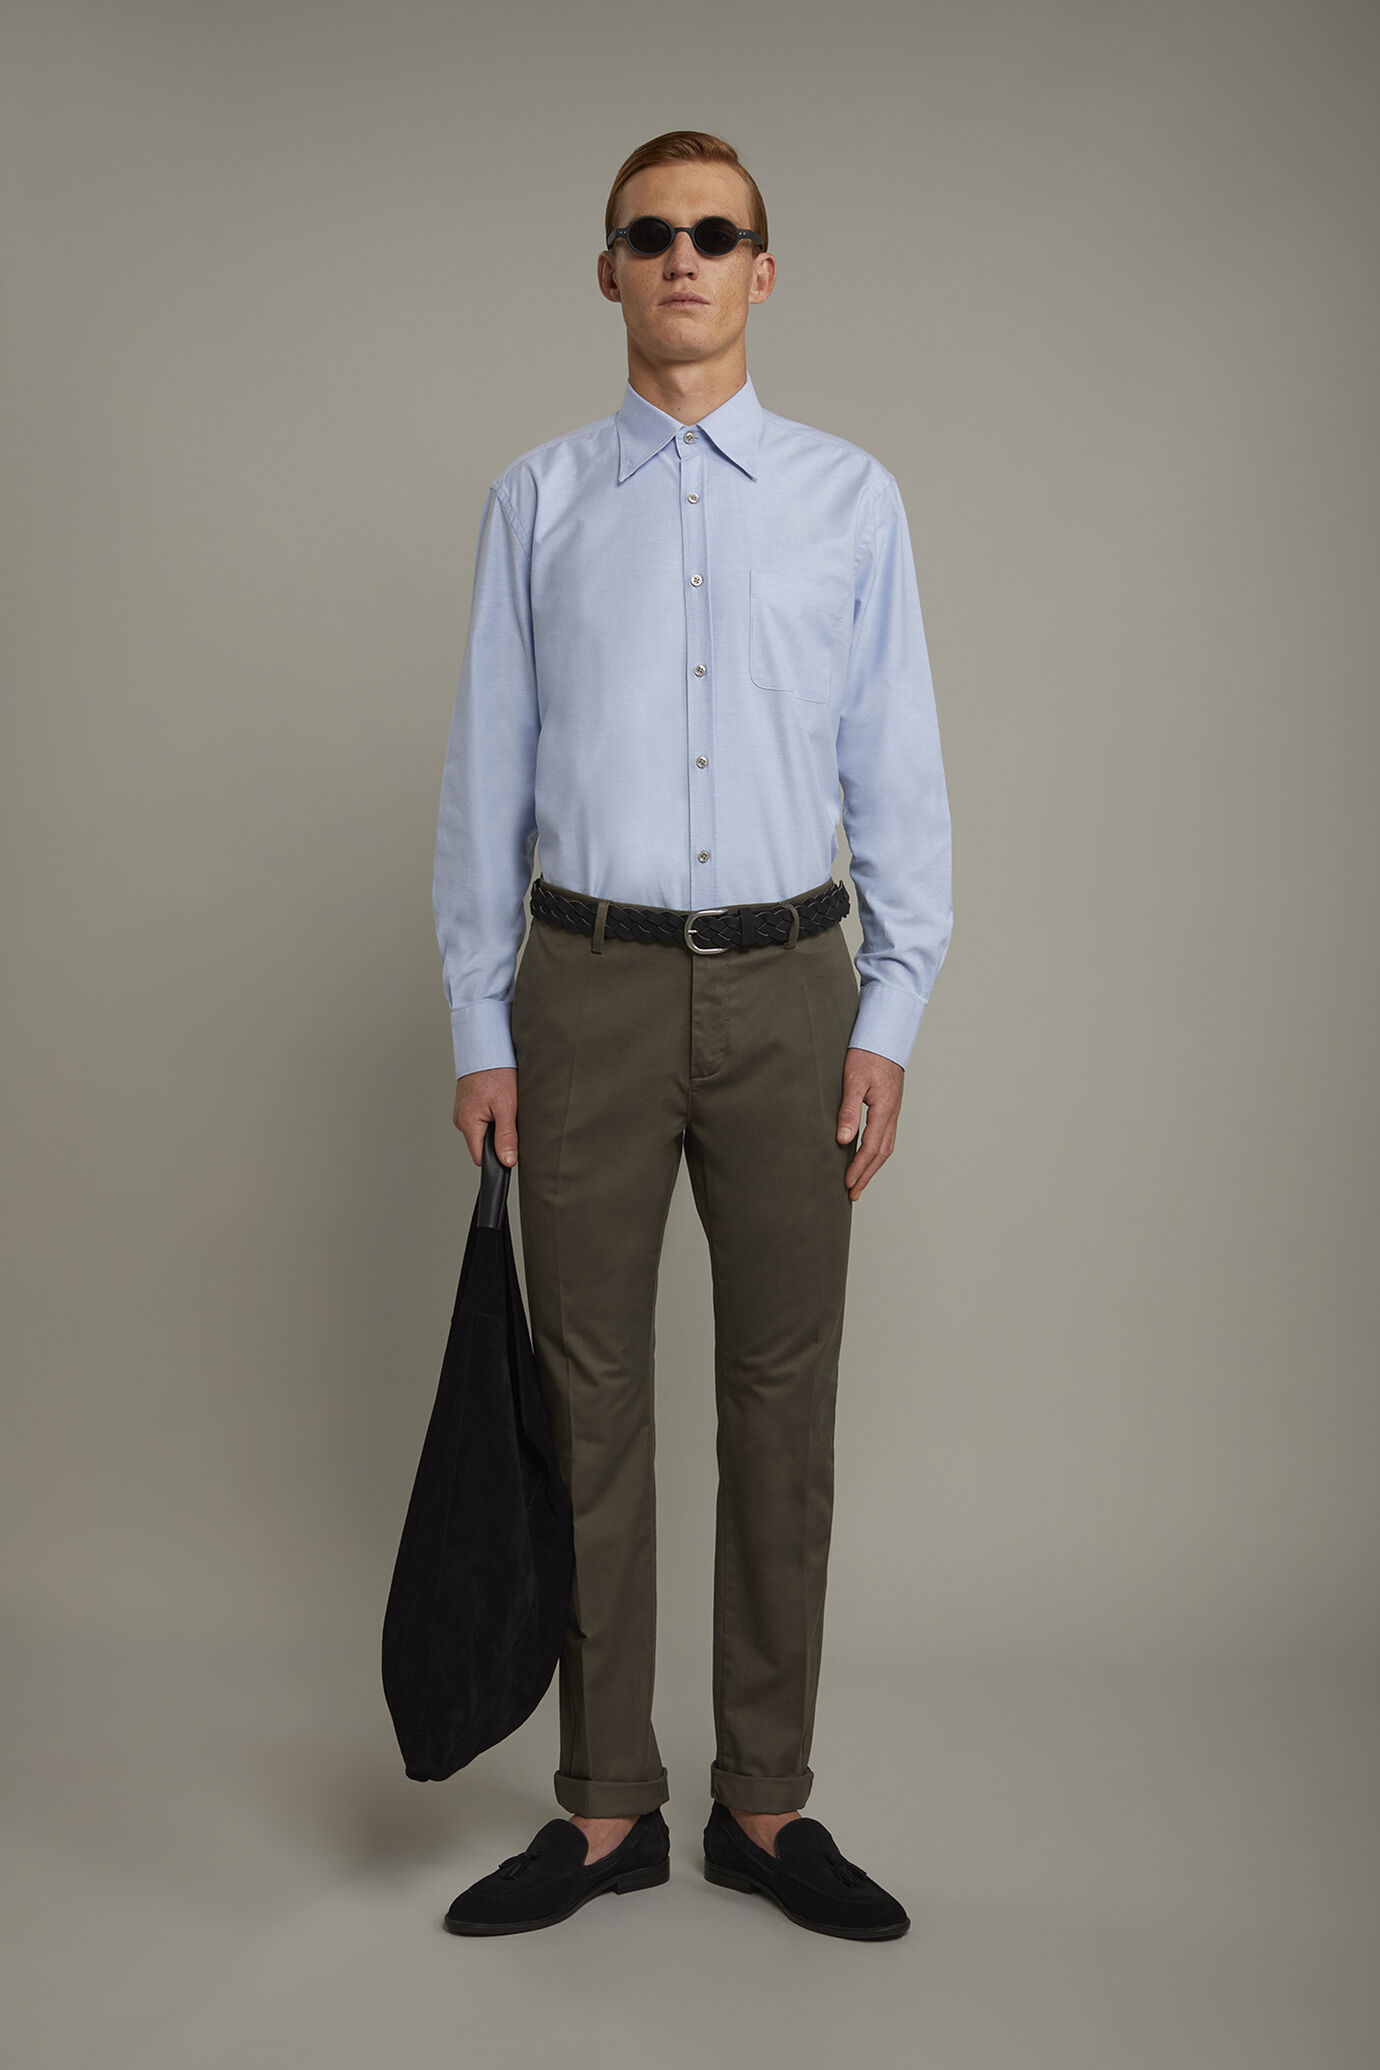 Camicia classica uomo collo button down tessuto Oxford rigato ultra leggero tinta unita comfort fit